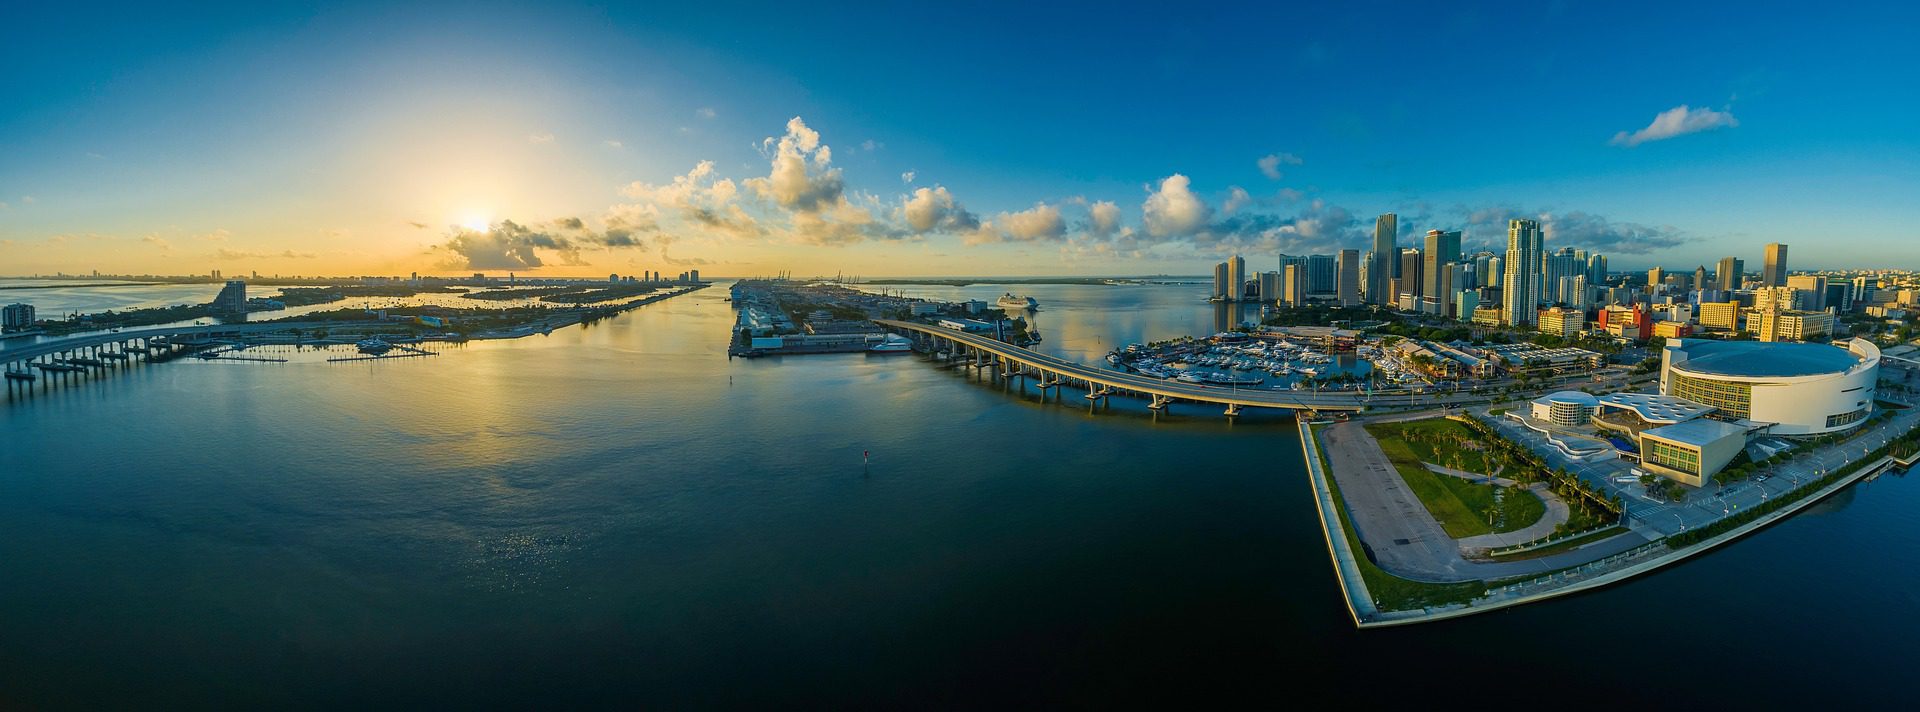 Drone Services Miami Florida